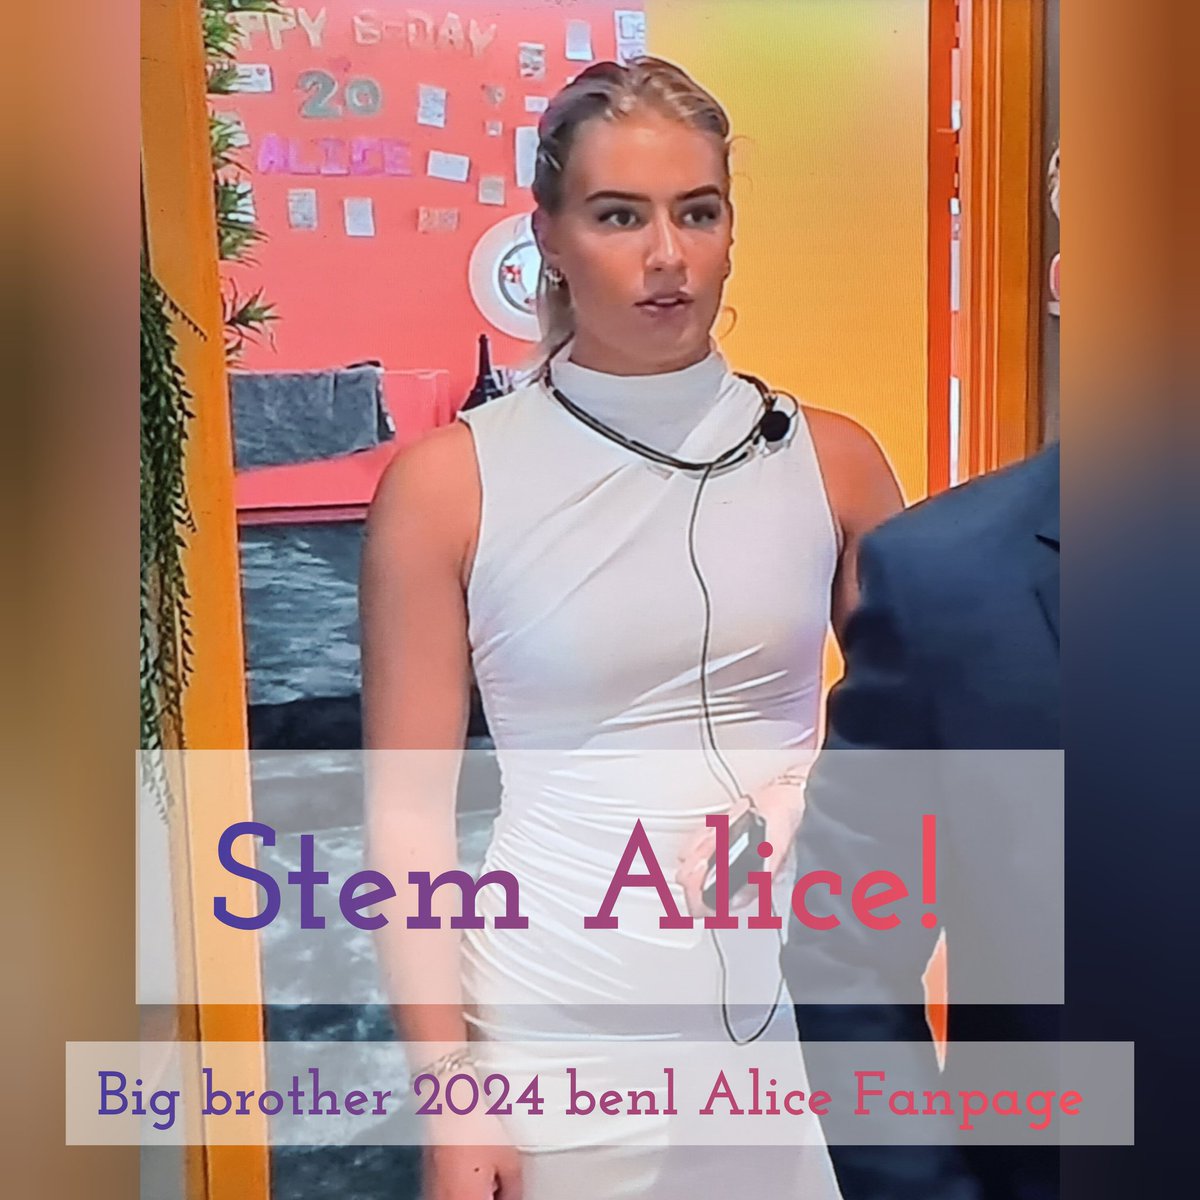 Stem op de enige waardige winnaar van Big Brother 2024! #Bigbrothernlbe #TeamAlice #WINNER m.facebook.com/groups/1421421…